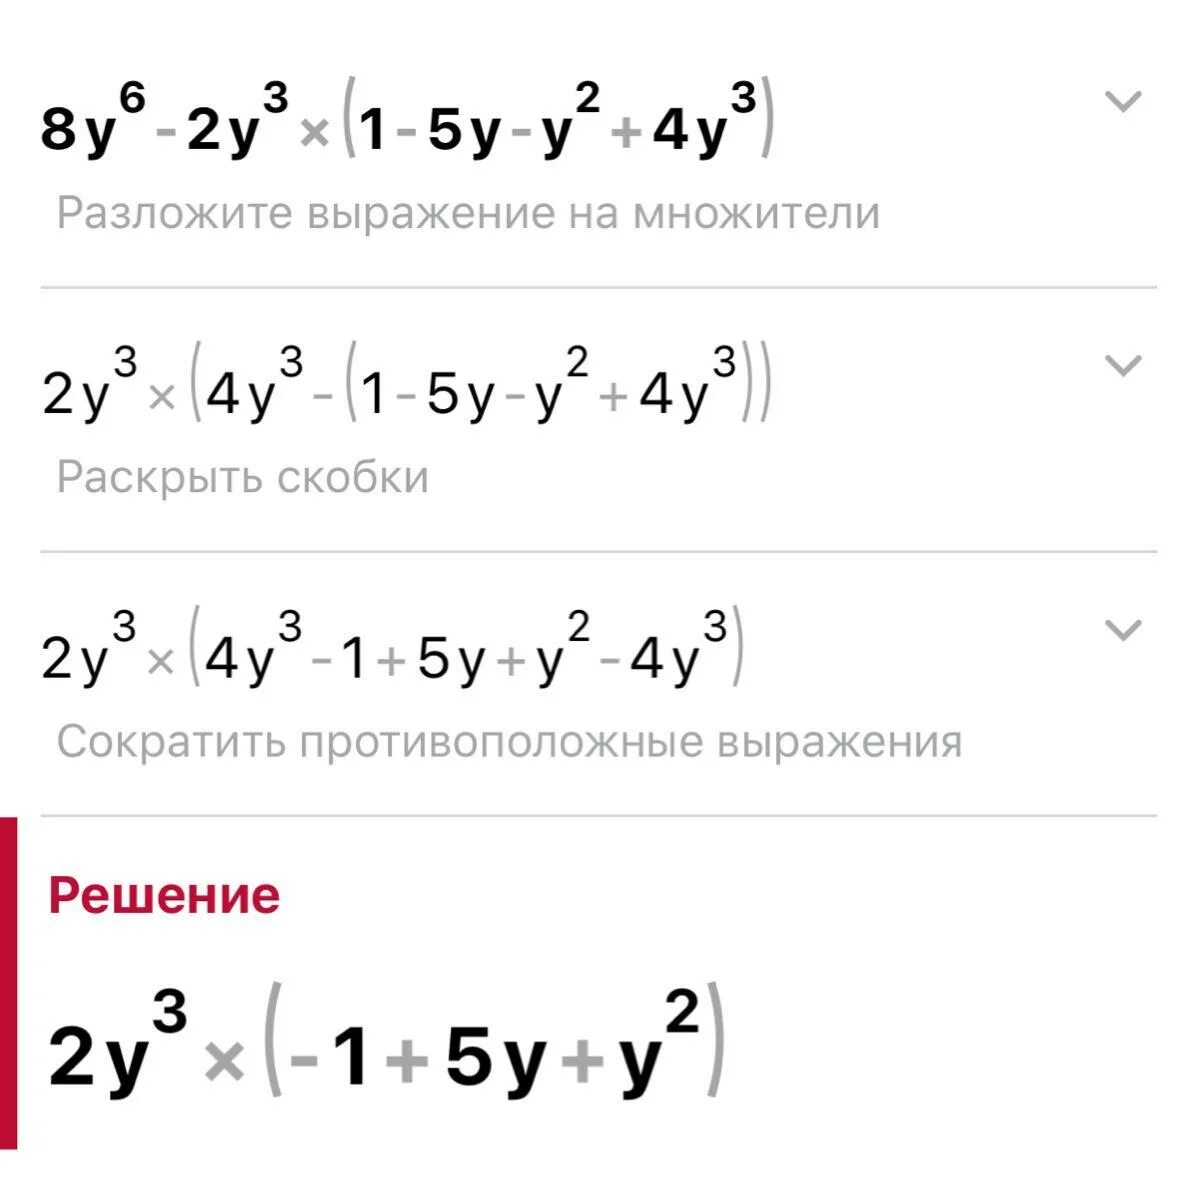 Упростите выражение 1 4y 3 4y. Преобразуйте в многочлен -5y(y+3)+(y-4)2. Преобразуйте в многочлен (y-4)^2. Преобразуйте выражение 1/6x -4y. Преобразуйте выражение 2/3 а-4 б-2(-2).